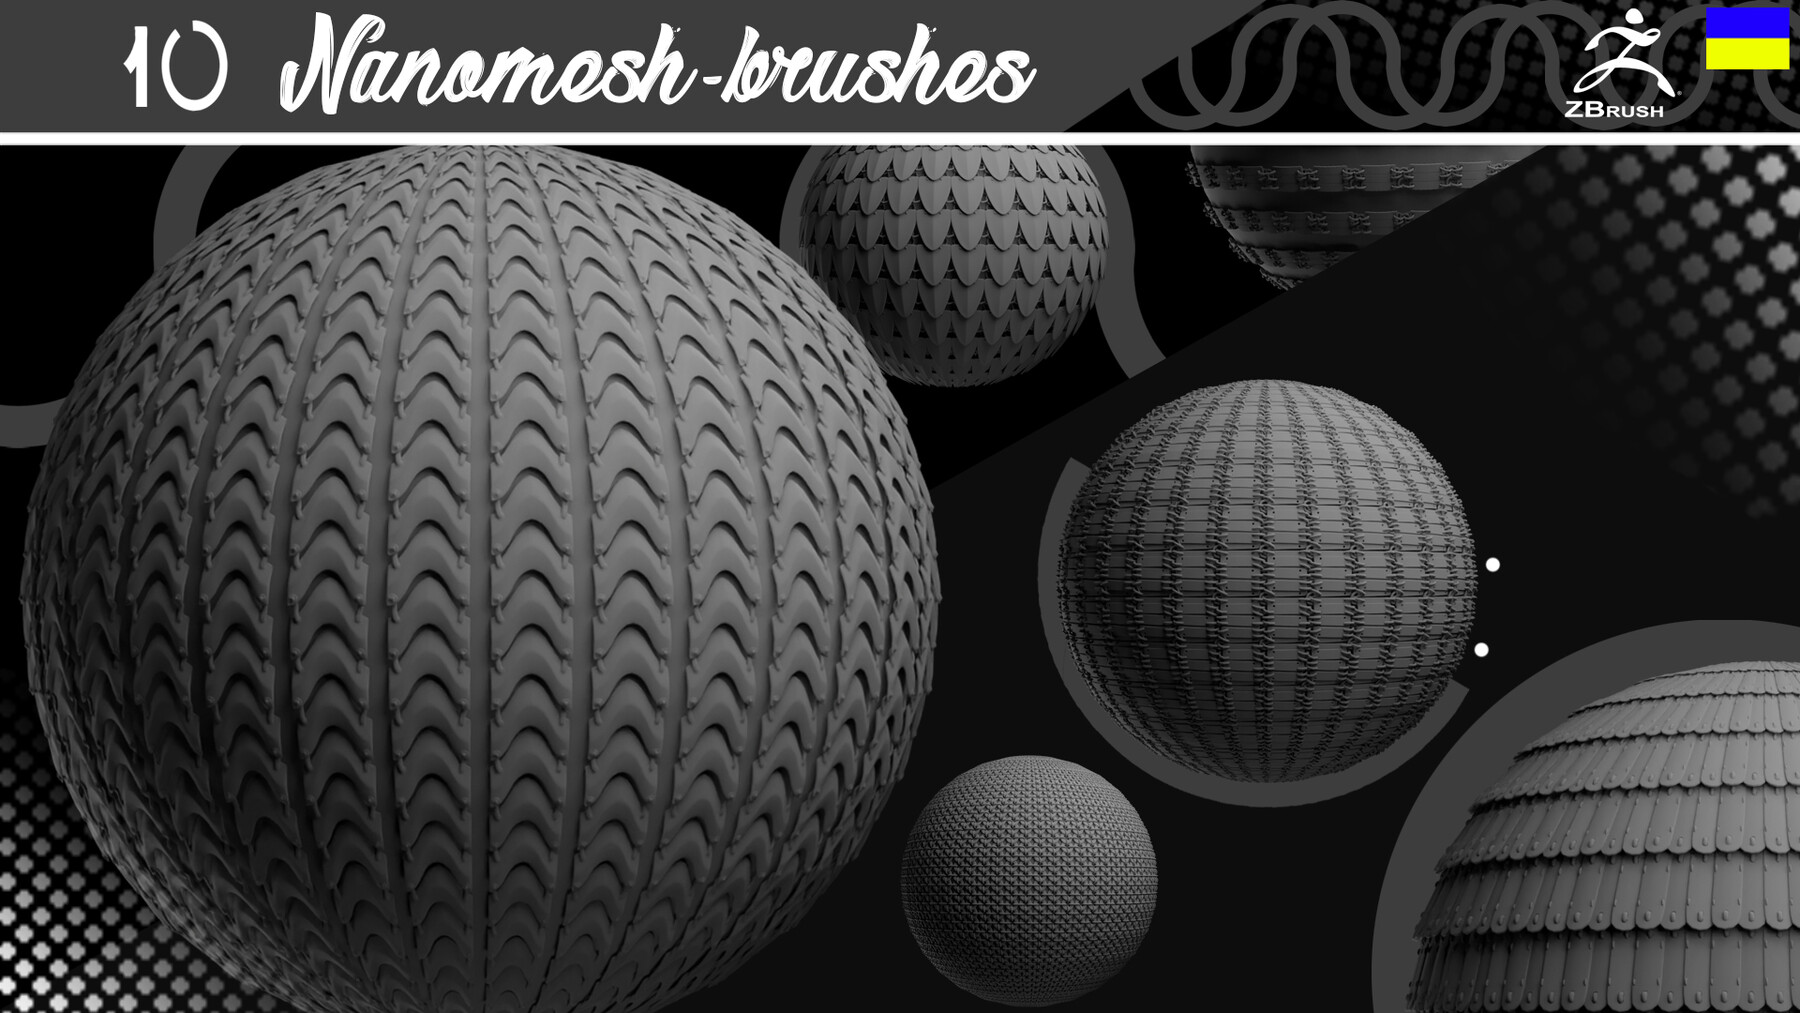 zbrush create nanomesh brush